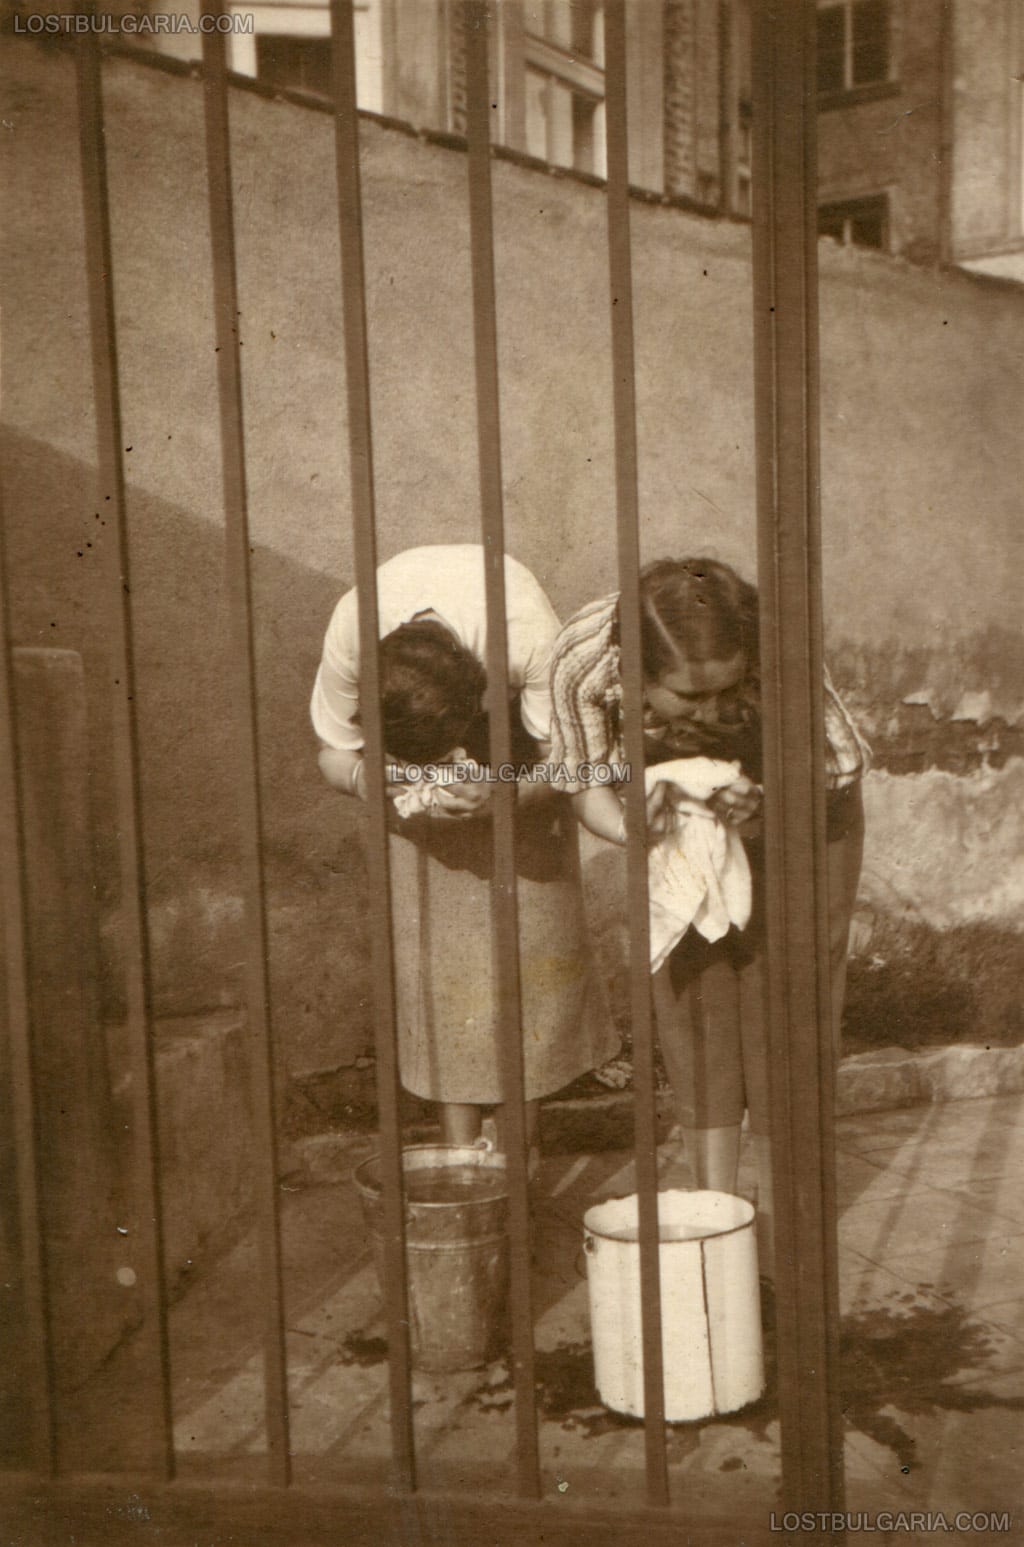 Две млади дами в любителски фото-разказ, четвърто действие - неудържим плач, София, ул. "Цар Иван Асен II" №6, 1927-8 г.